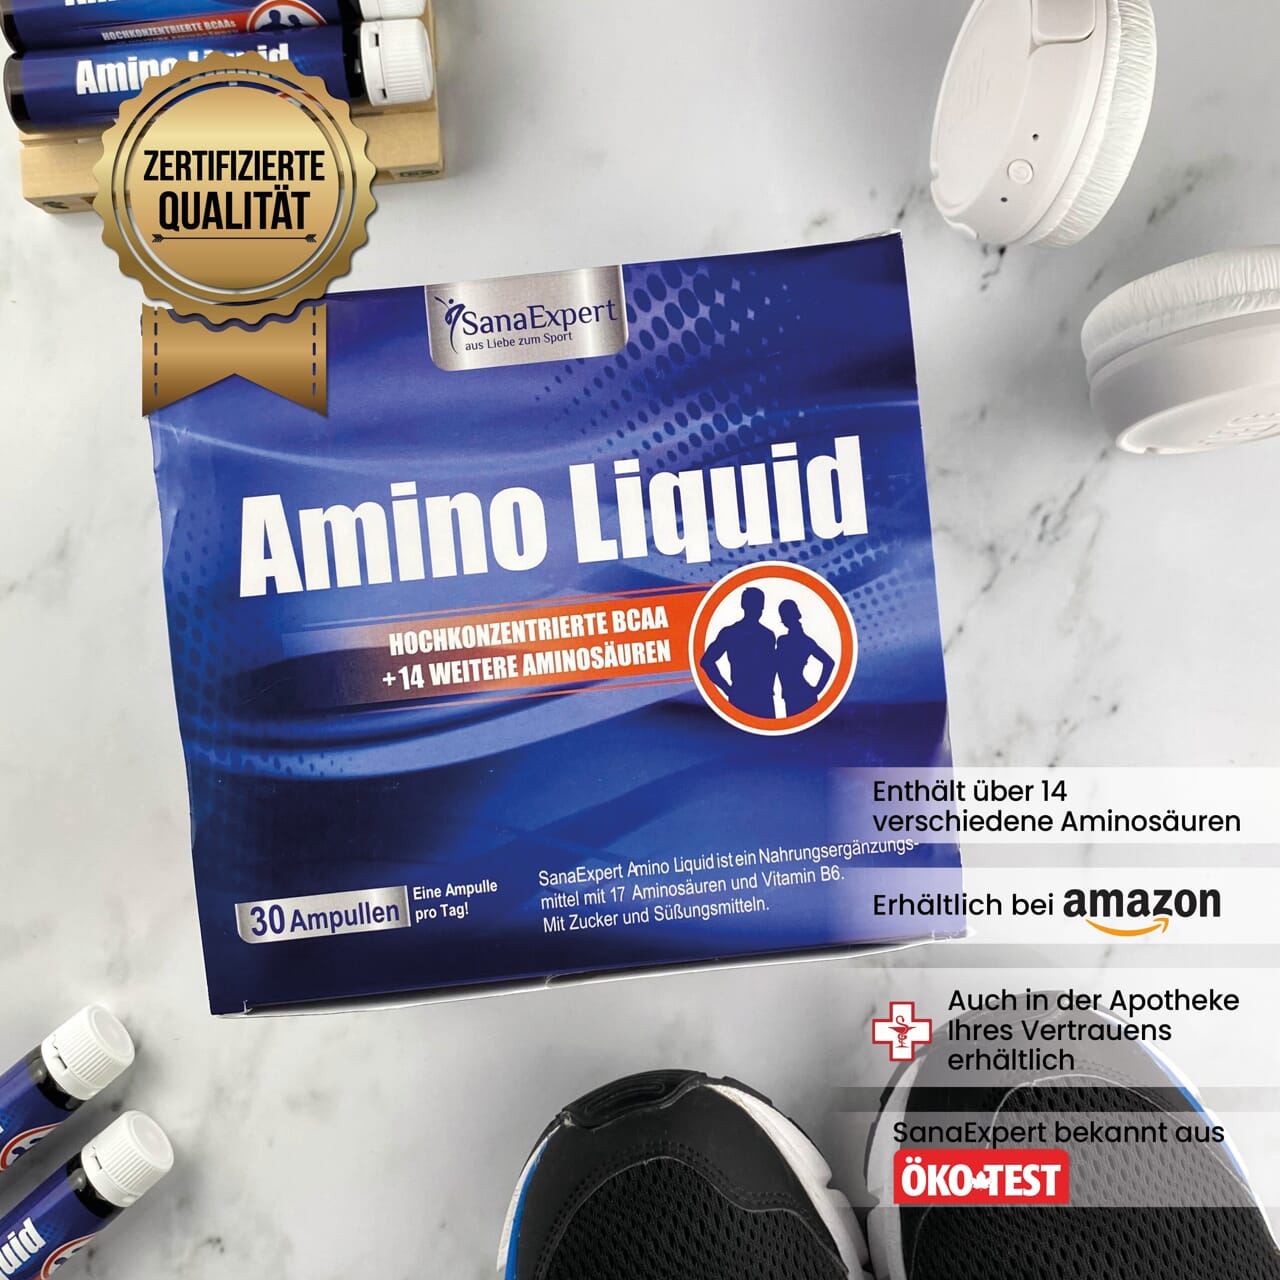 Packung von Amino Liquid auf einer hellen Oberfläche, flankiert von einer Sportwasserflasche und Amino Liquid Ampullen, mit Qualitätszertifikat im Bild.